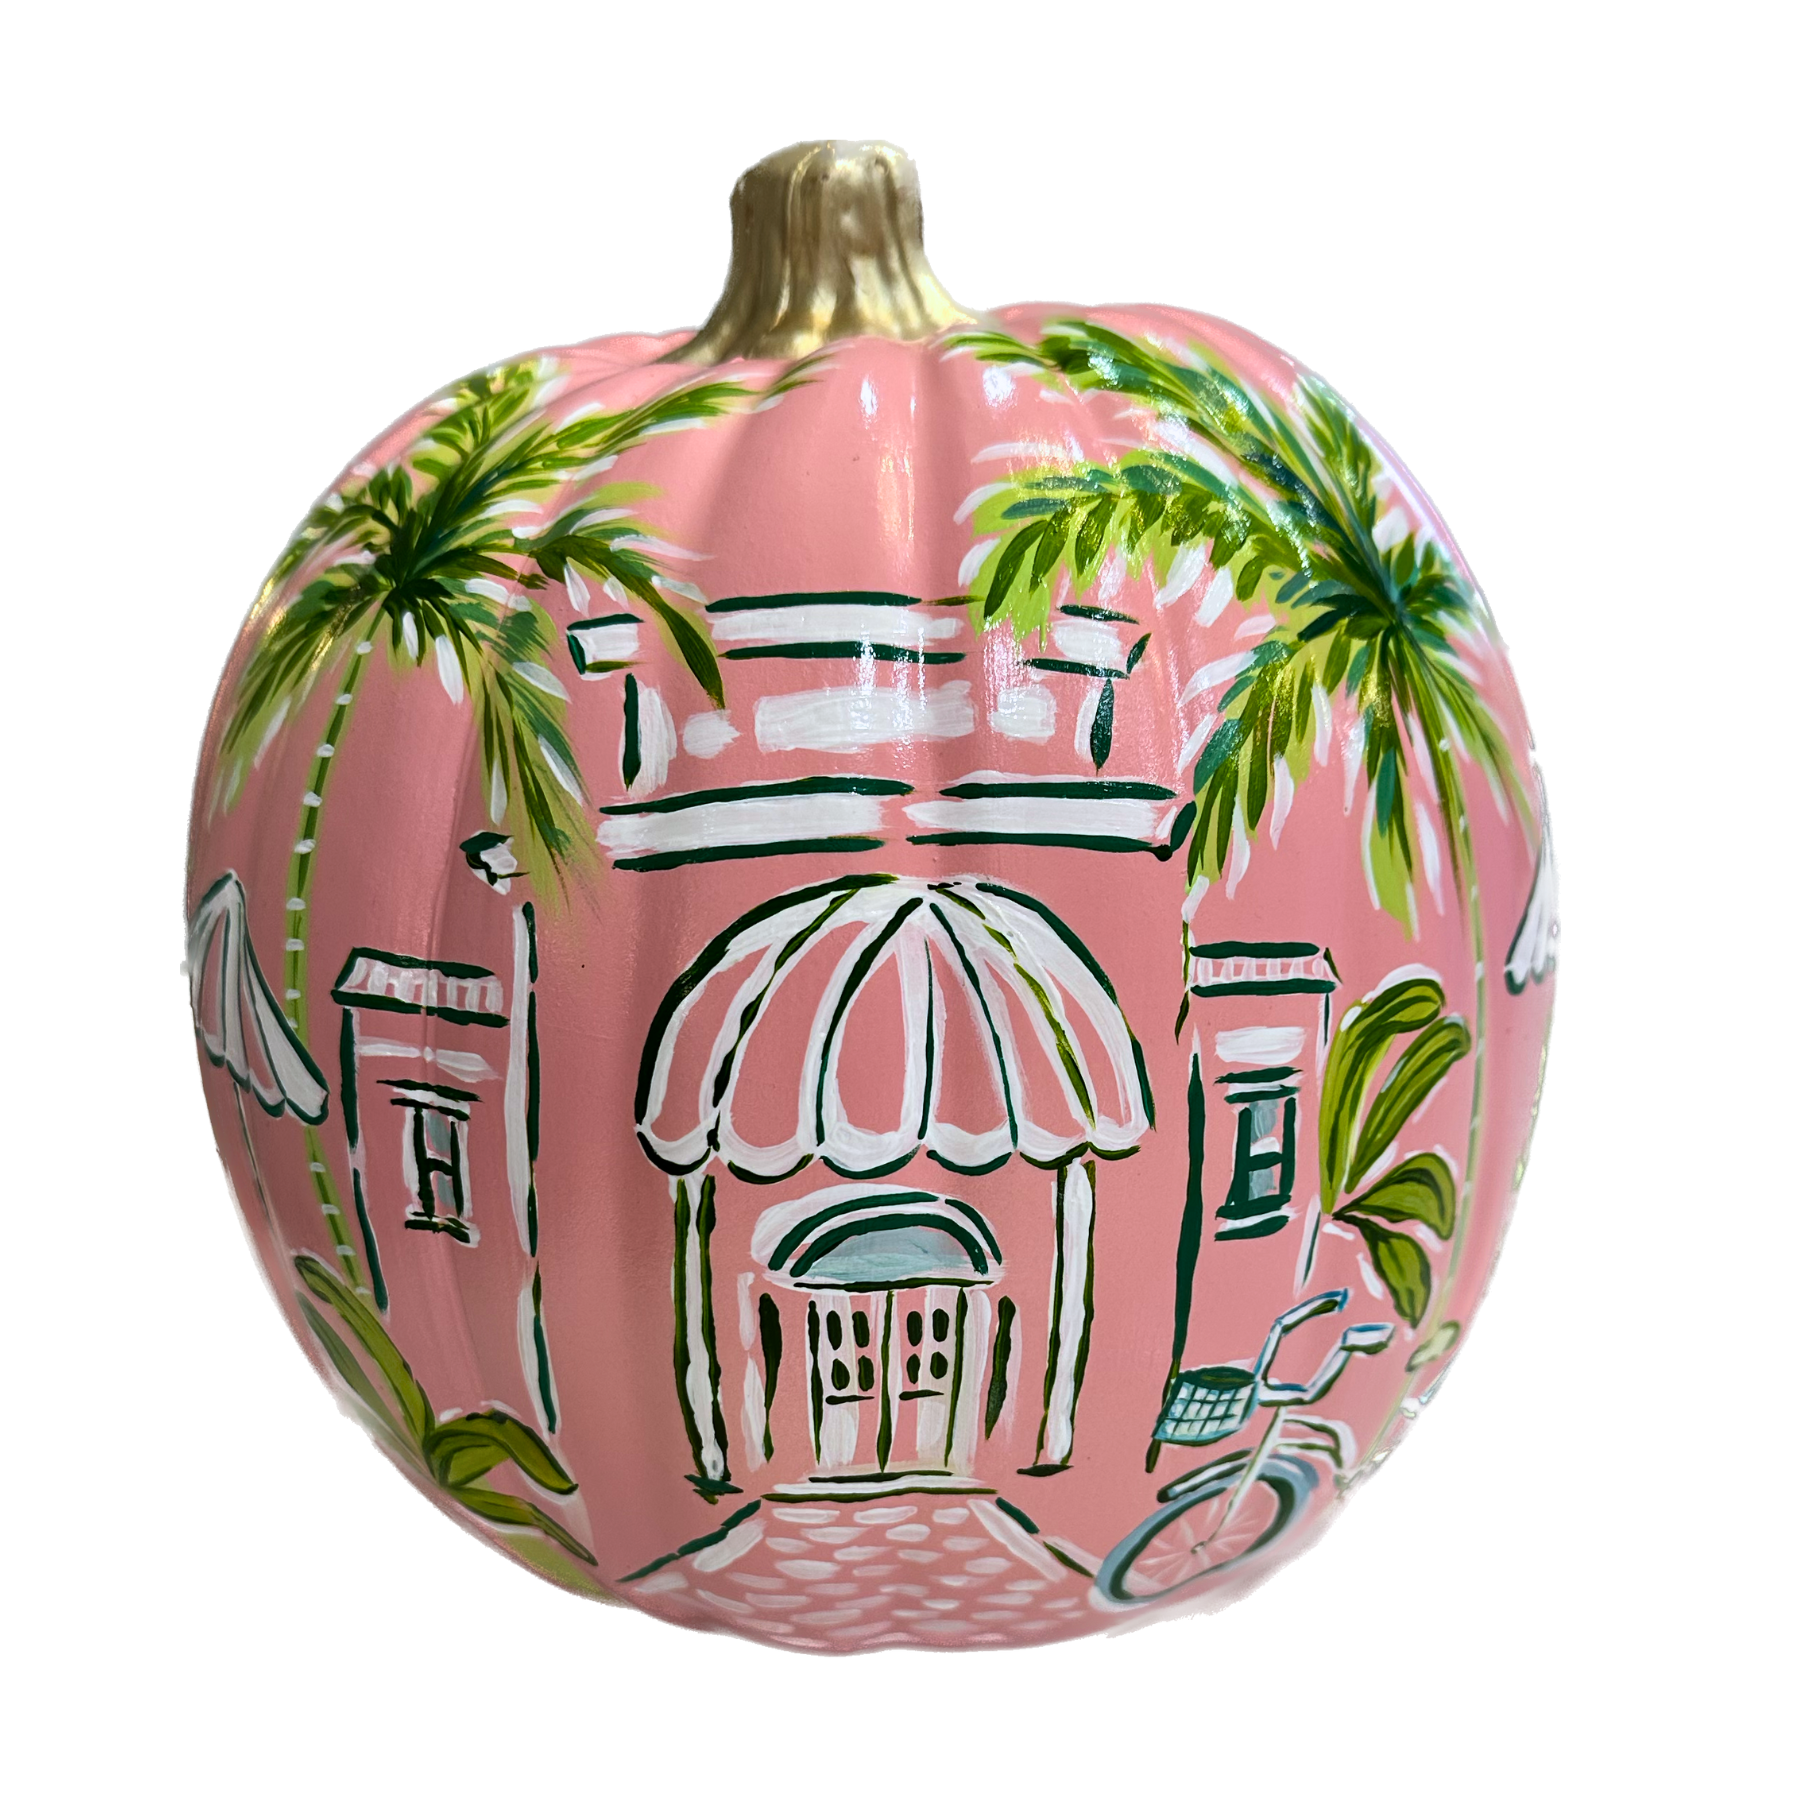 The Palm Beach Pumpkin